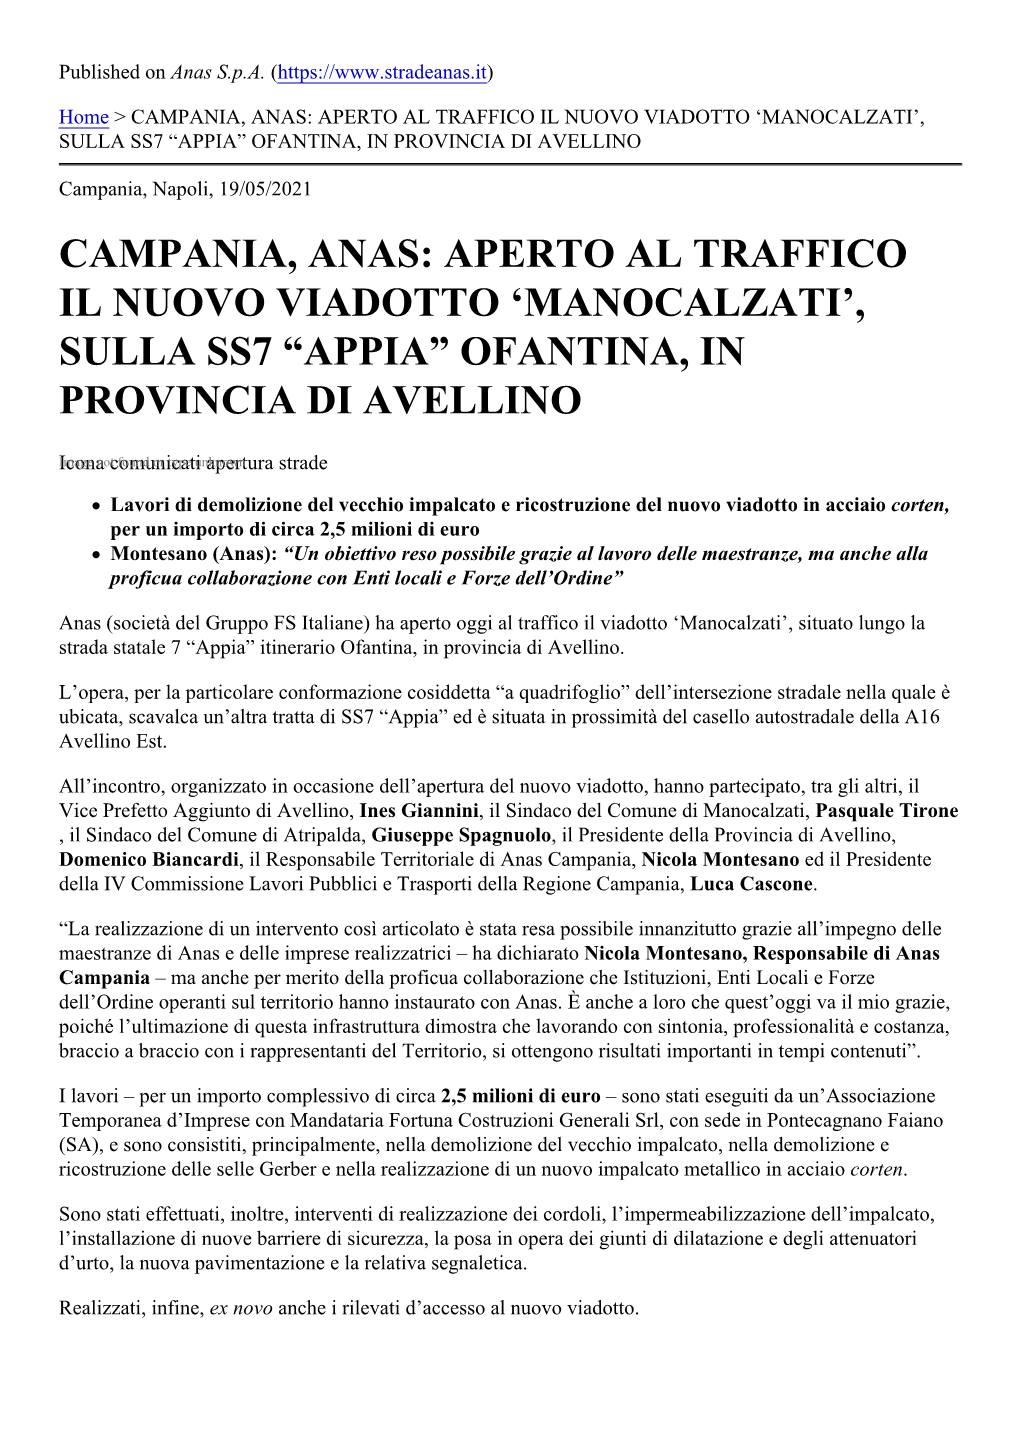 Campania, Anas: Aperto Al Traffico Il Nuovo Viadotto ‘Manocalzati’, Sulla Ss7 “Appia” Ofantina, in Provincia Di Avellino